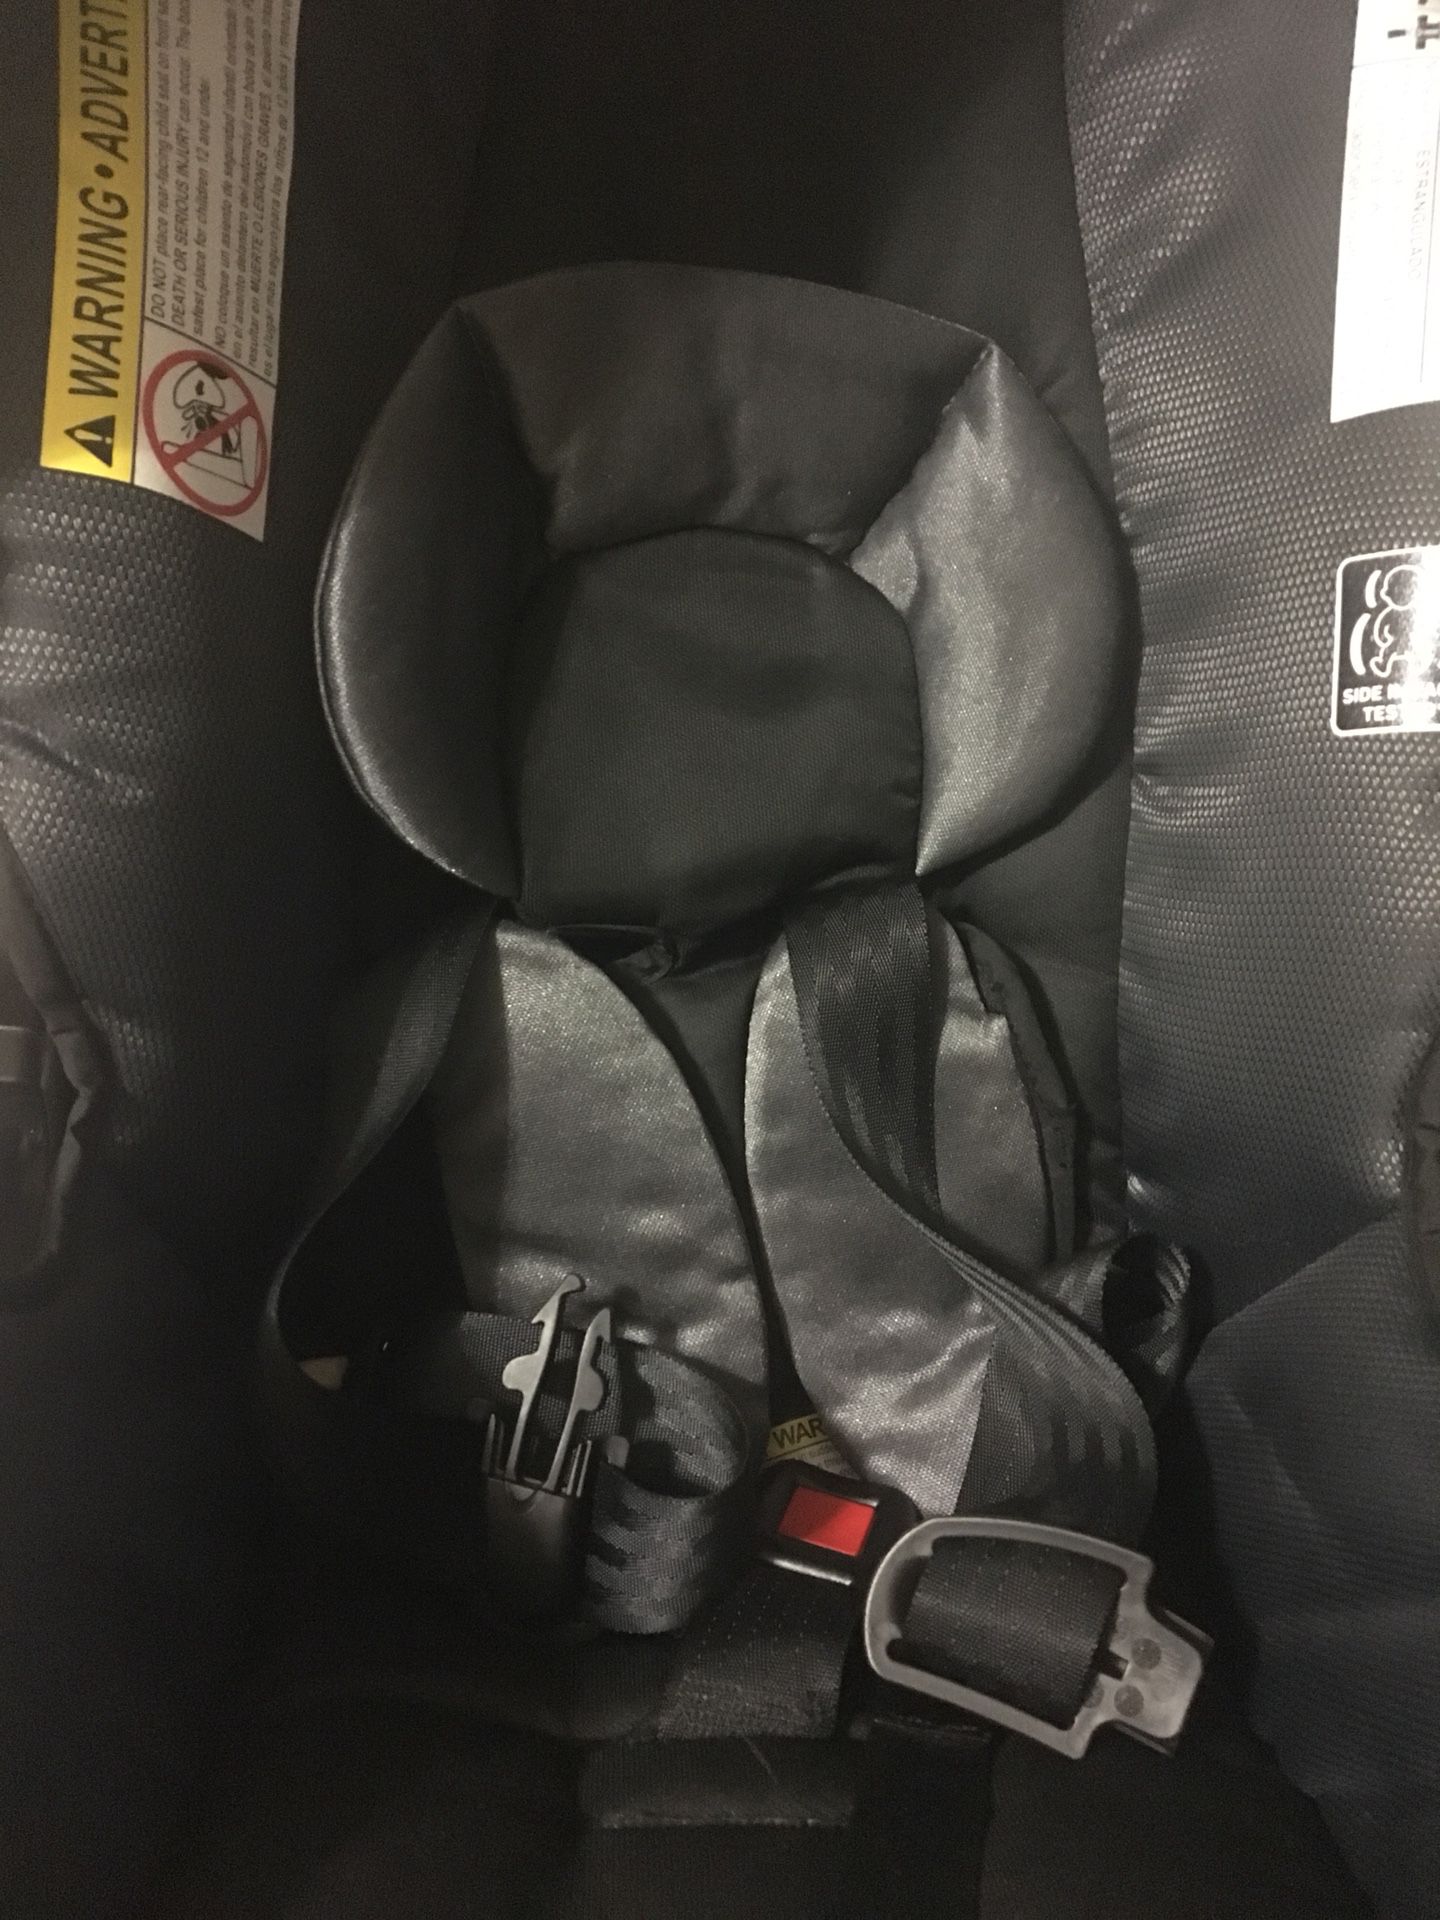 Graco Aire 3 click connect car seat got infants